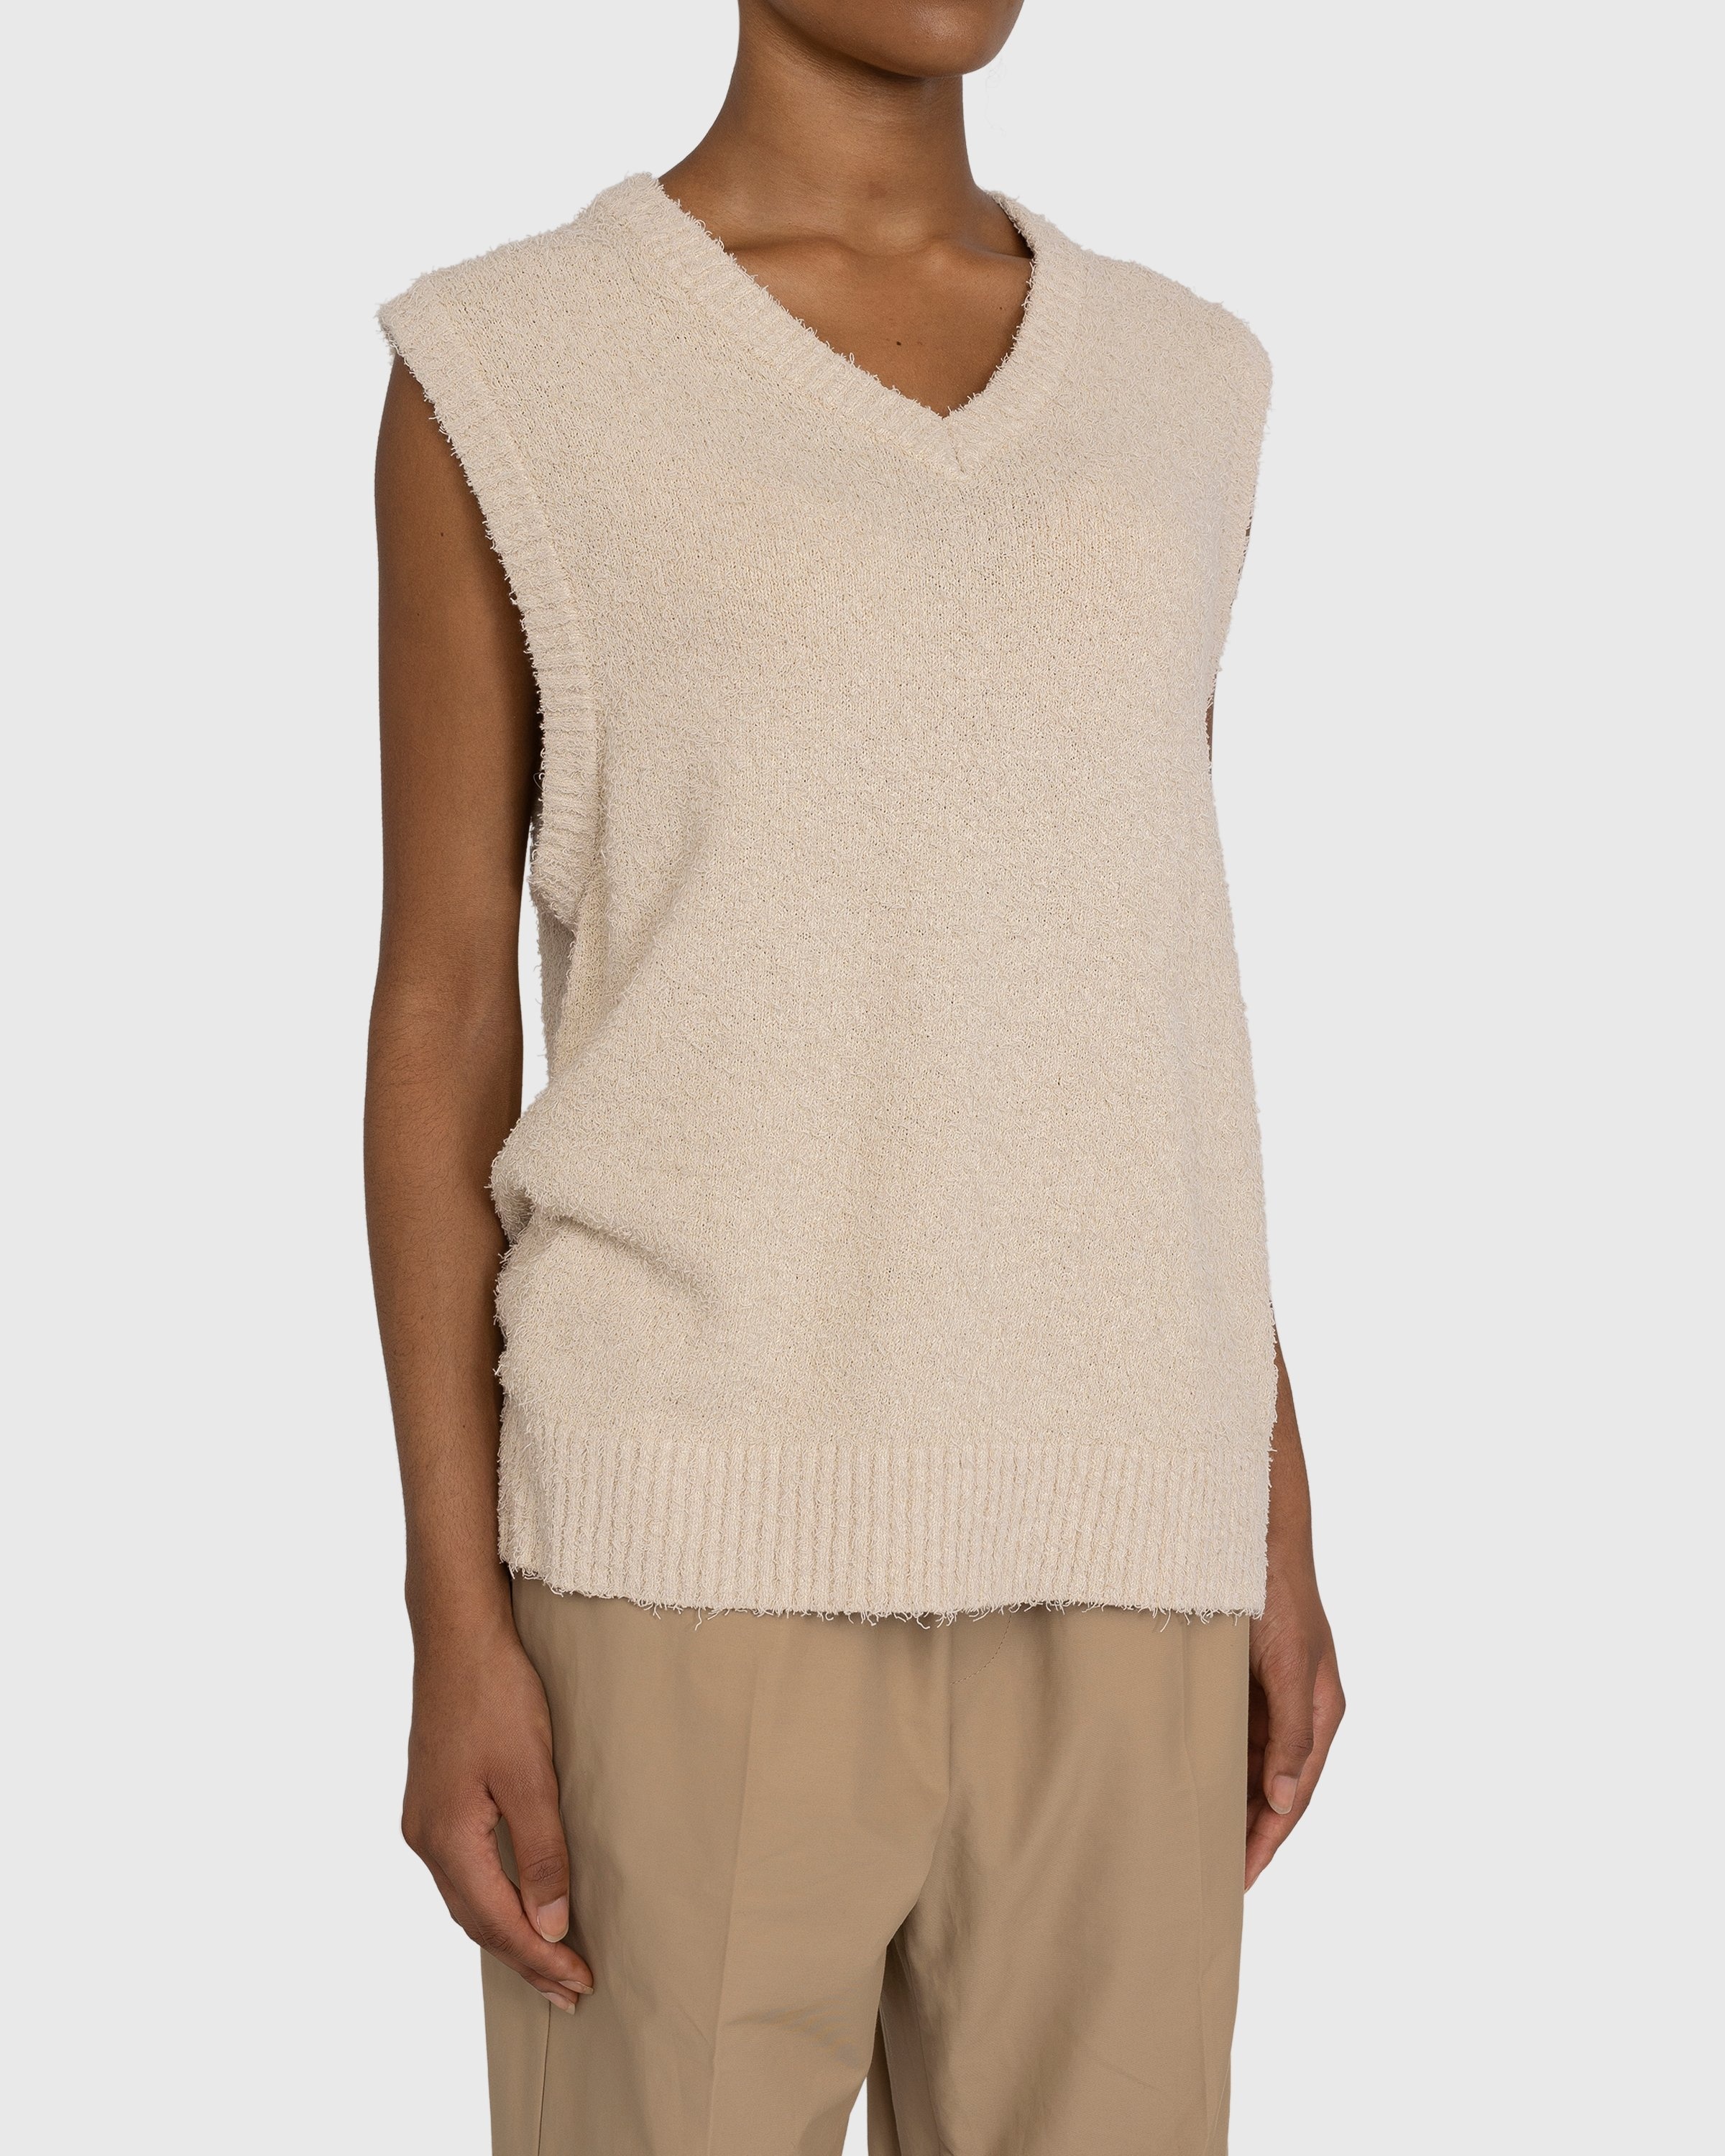 Highsnobiety – V-Neck Sweater Vest Beige - Gilets - Beige - Image 4